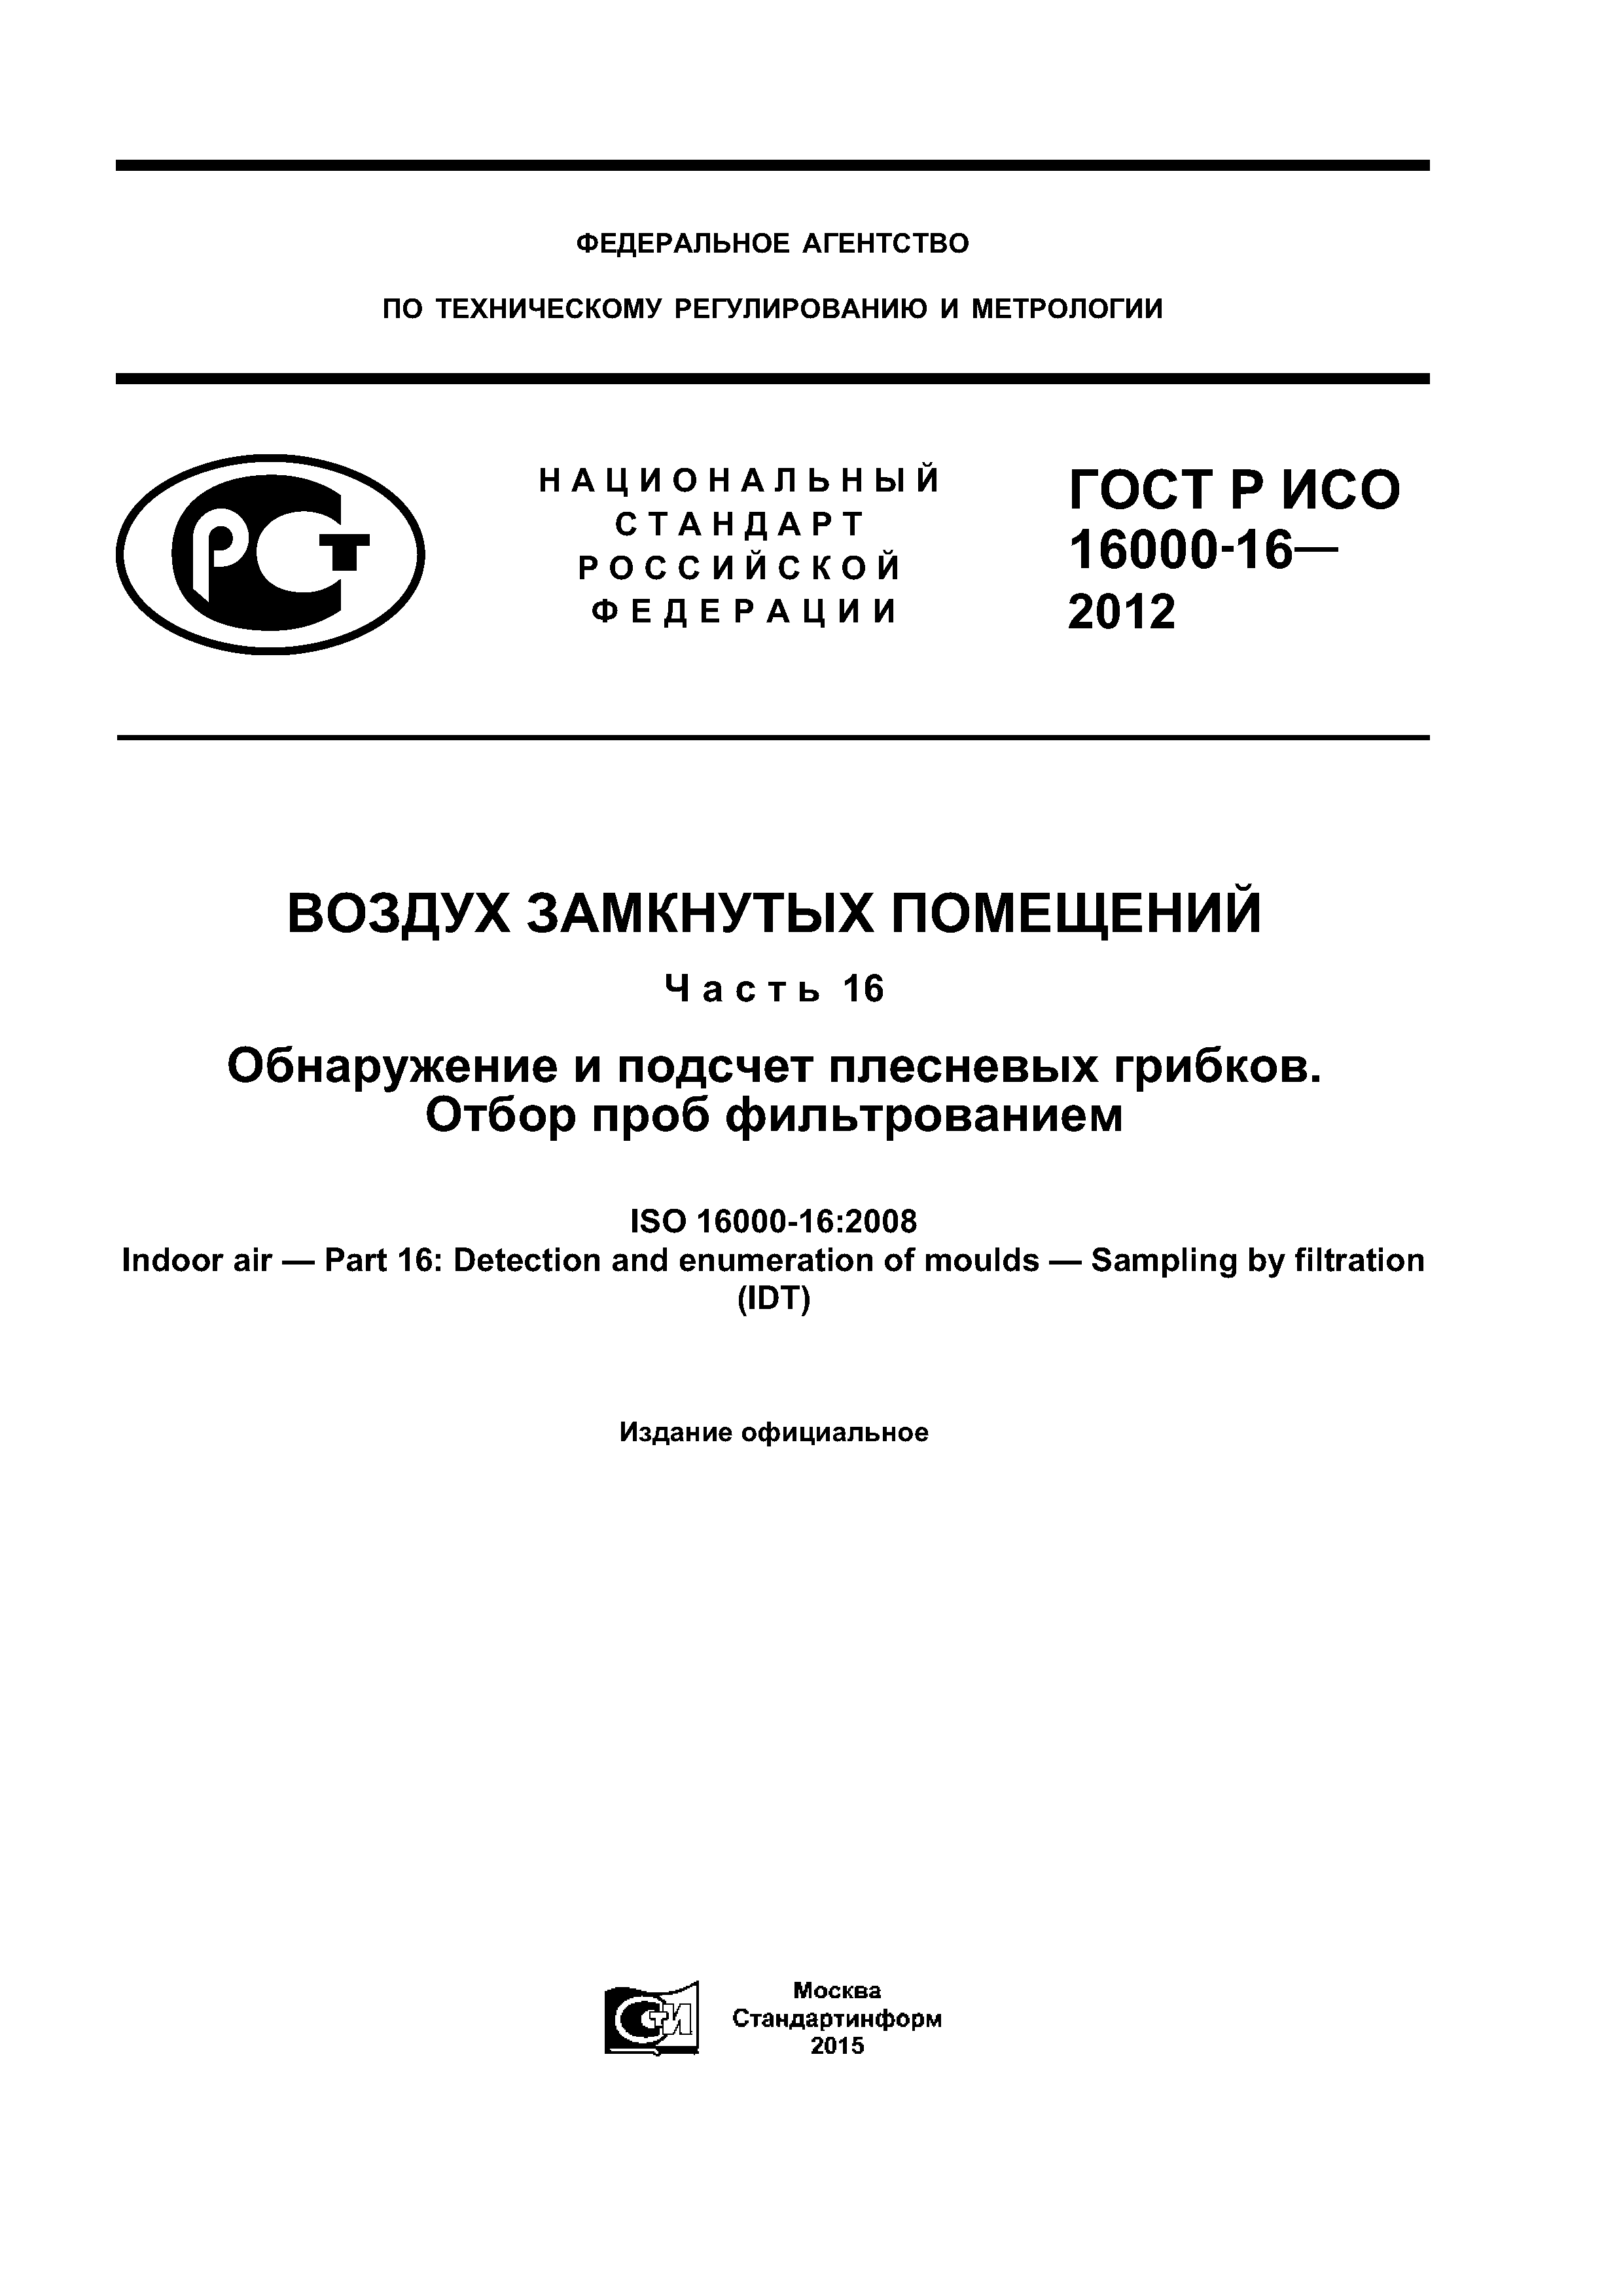 ГОСТ Р ИСО 16000-16-2012